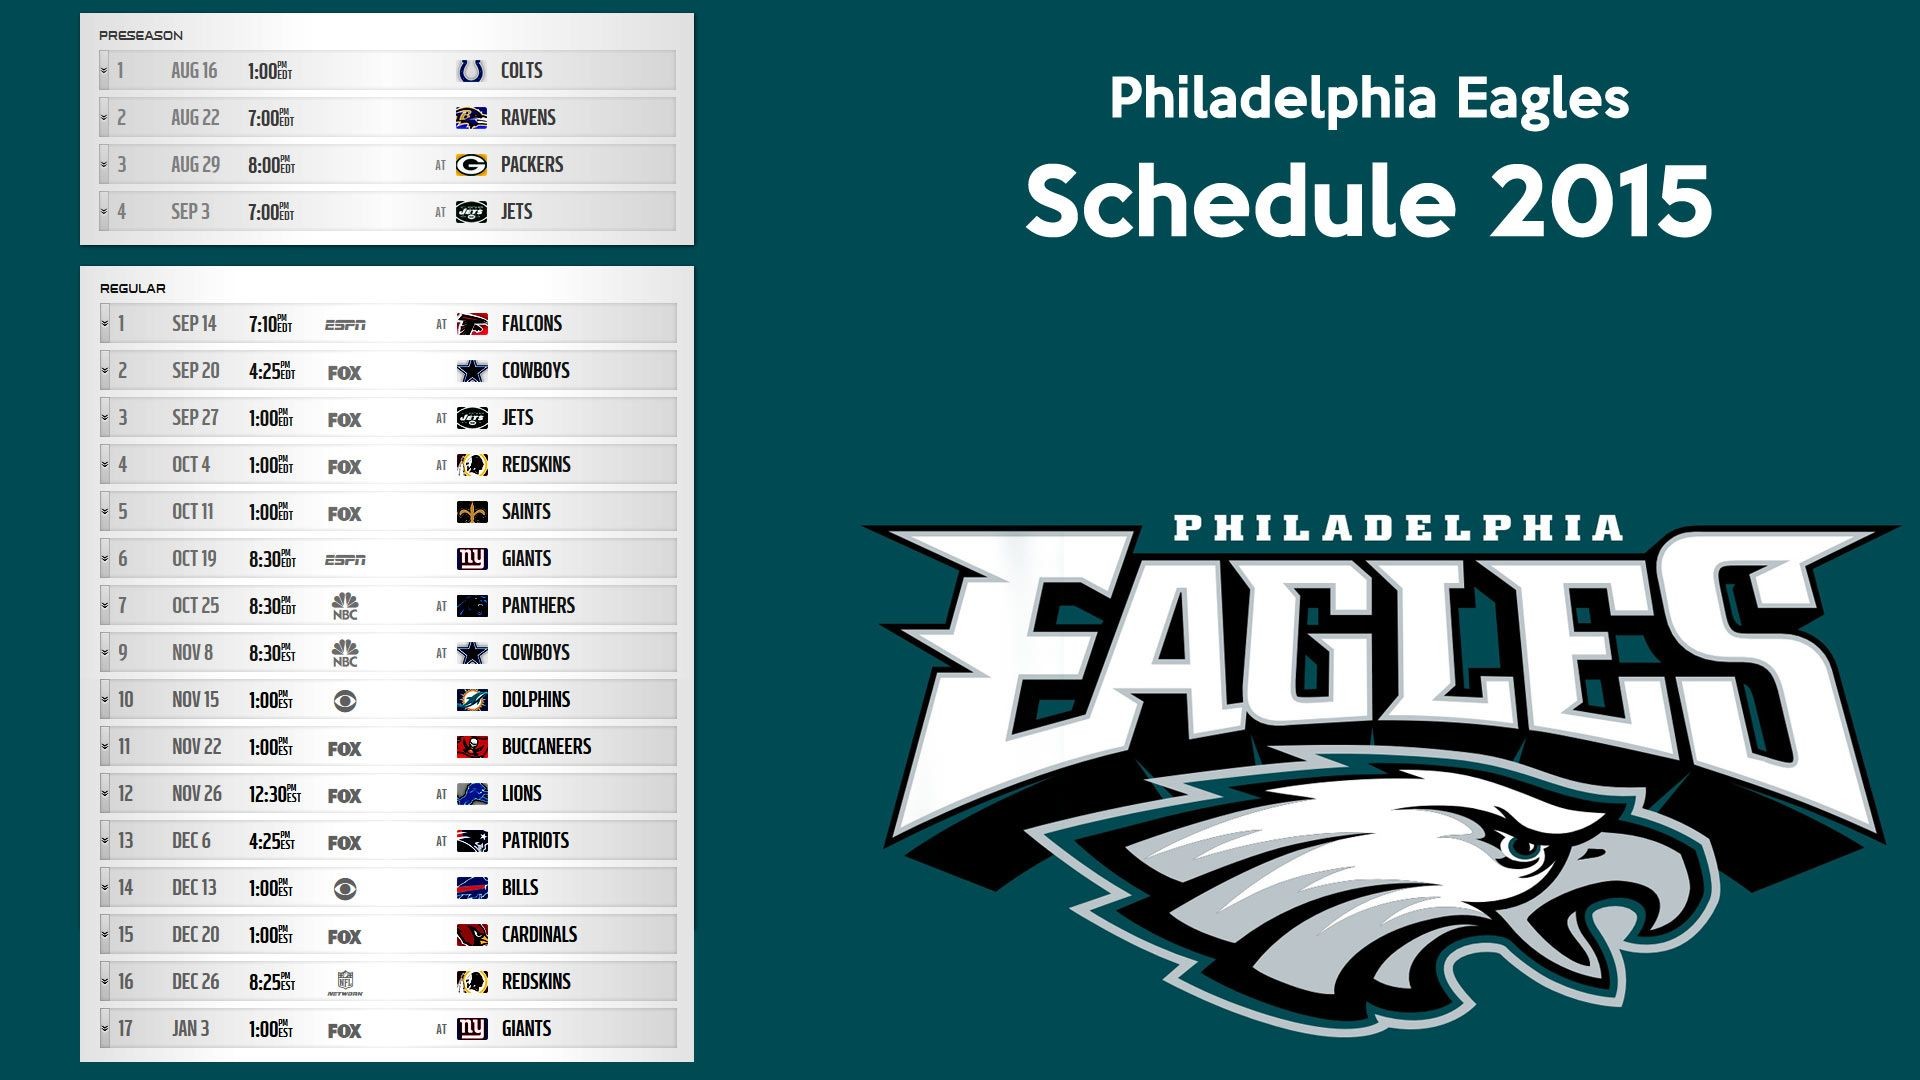 1920x1080 Philadelphia Eagles schedule 2015 wallpaper – Free full hd .